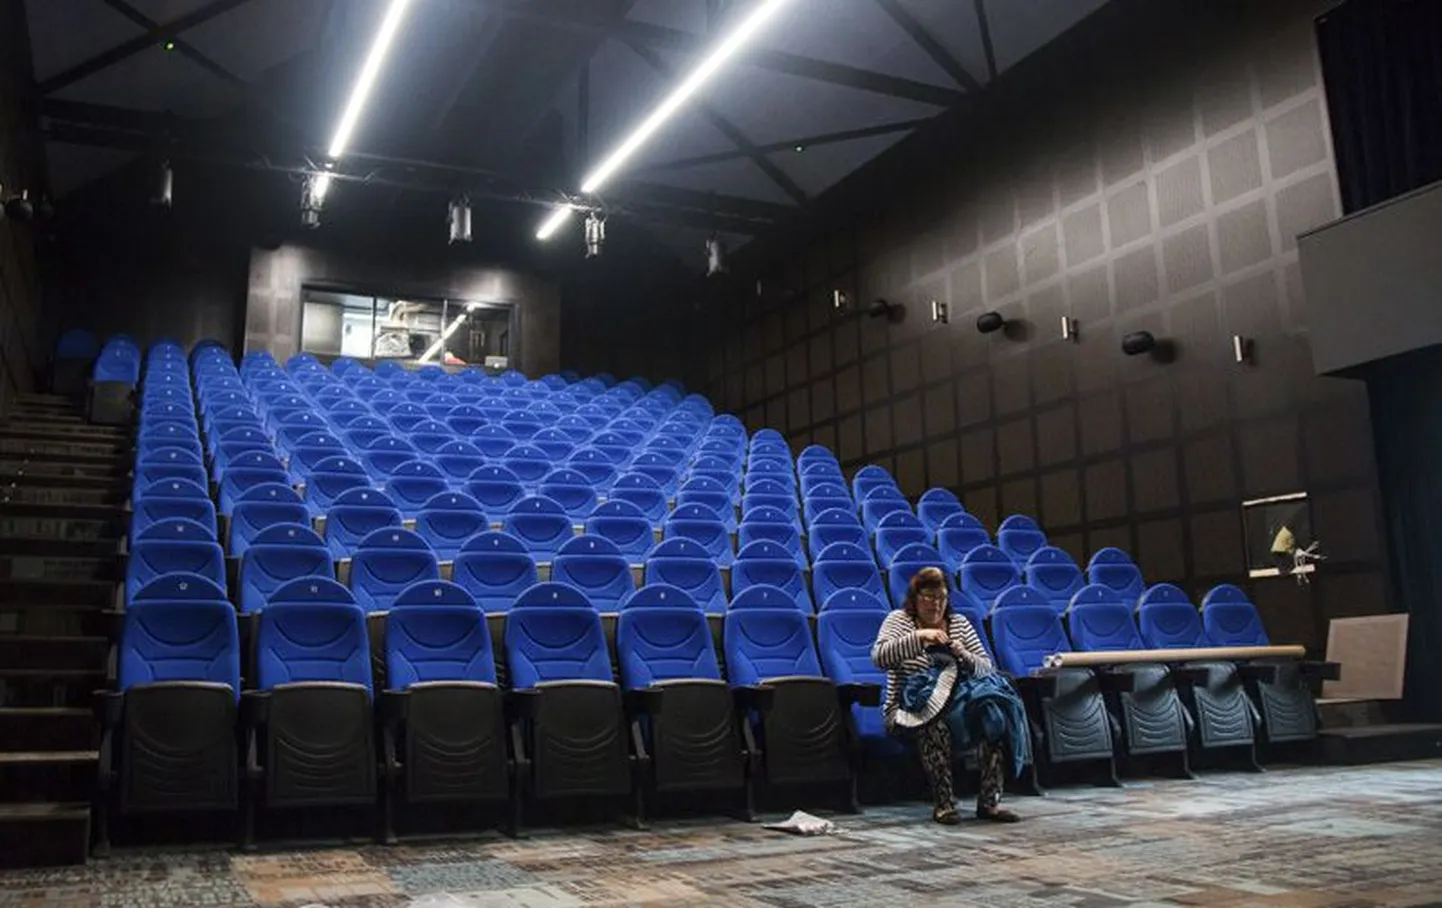 Kinosaali 144 tooli on publiku ootel. Ka pikemate inimeste jalad mahuvad kenasti ära.